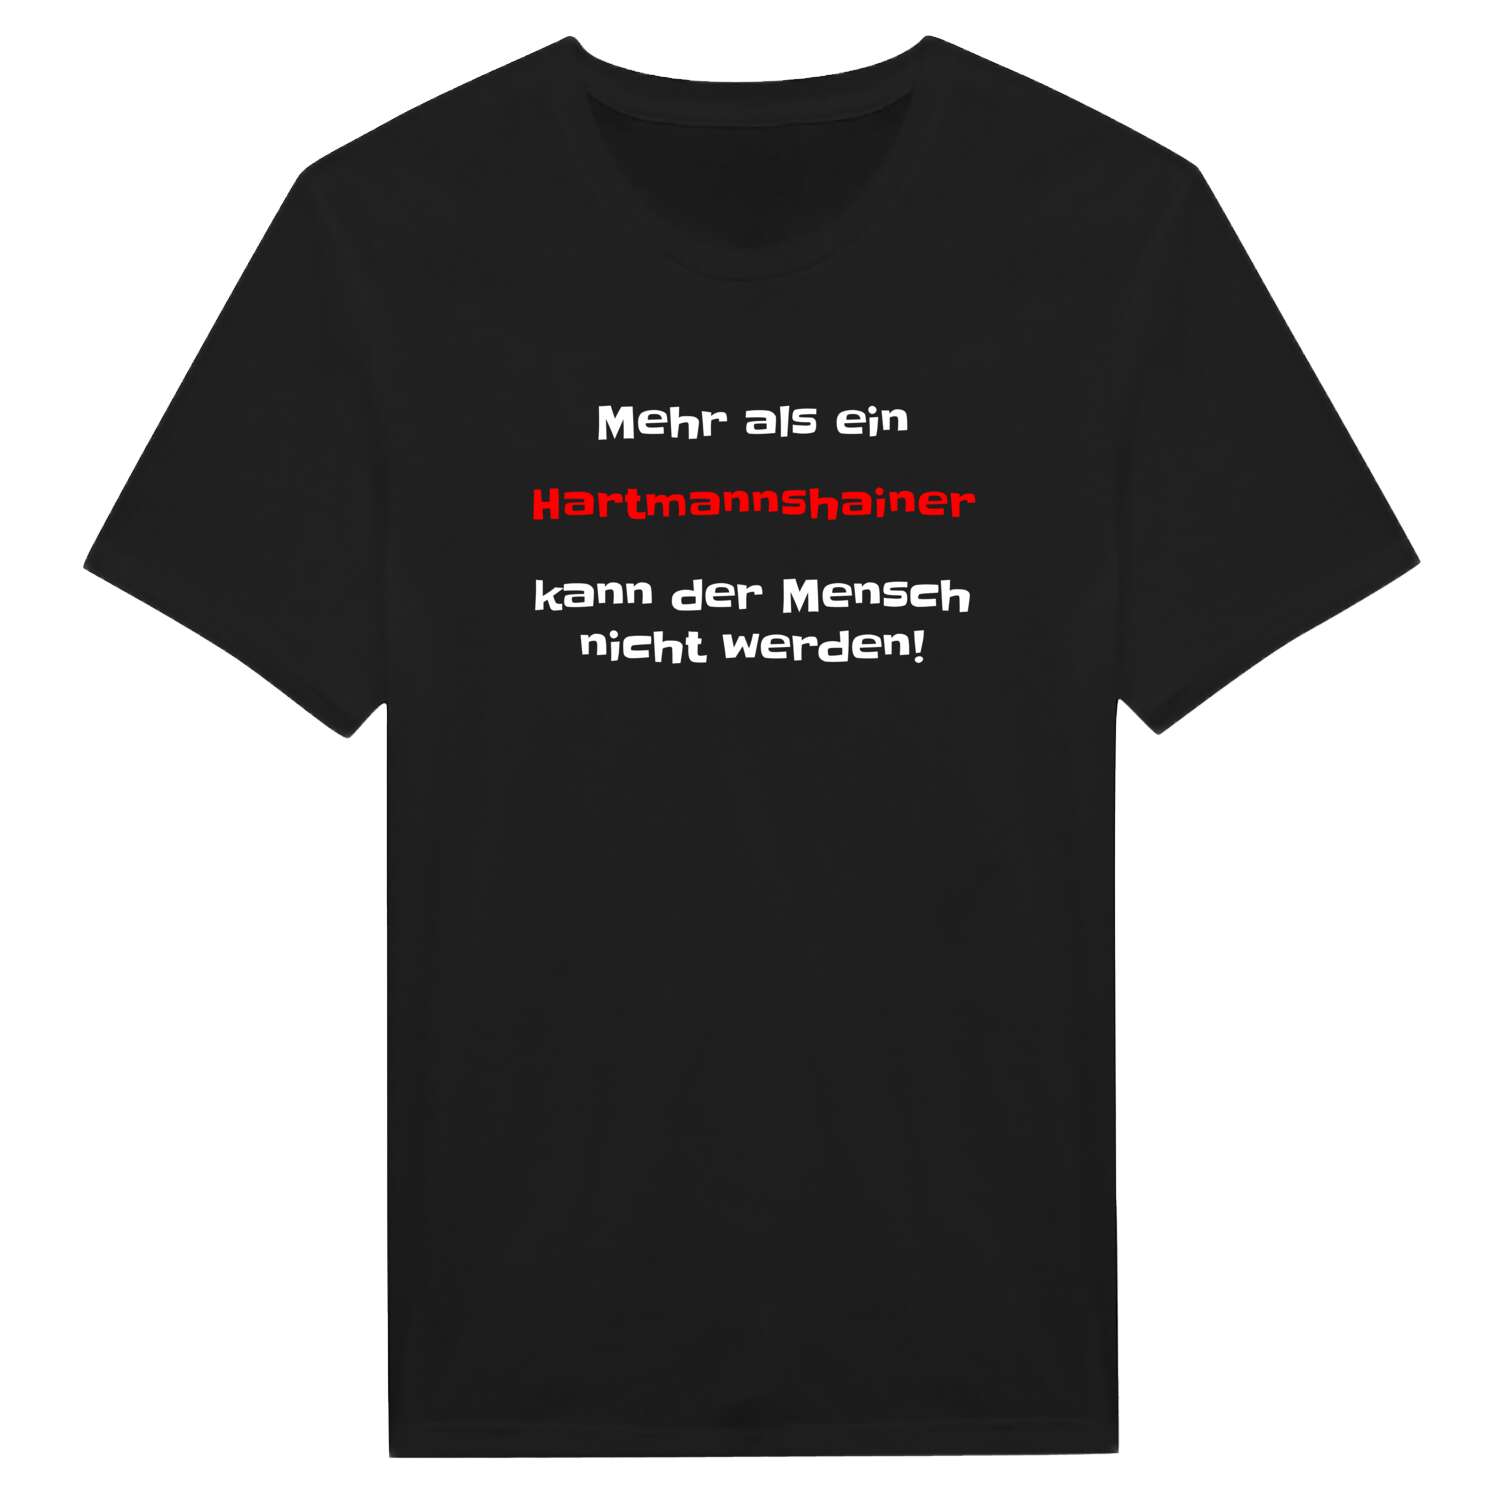 Hartmannshain T-Shirt »Mehr als ein«